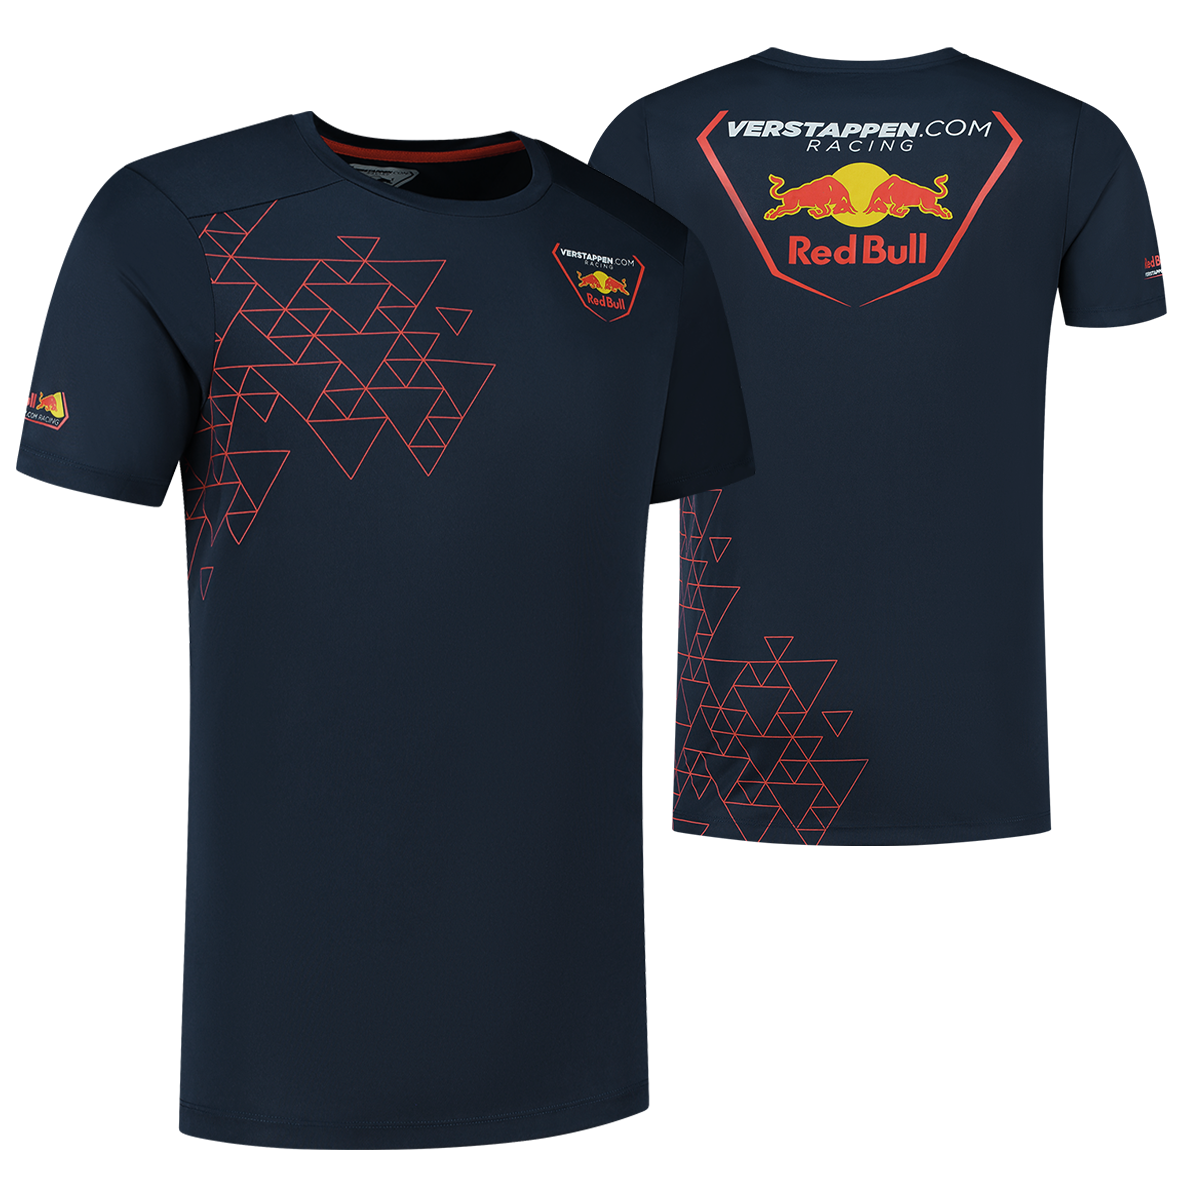 Verstappen.com Racing T-shirt - XL - Max Verstappen